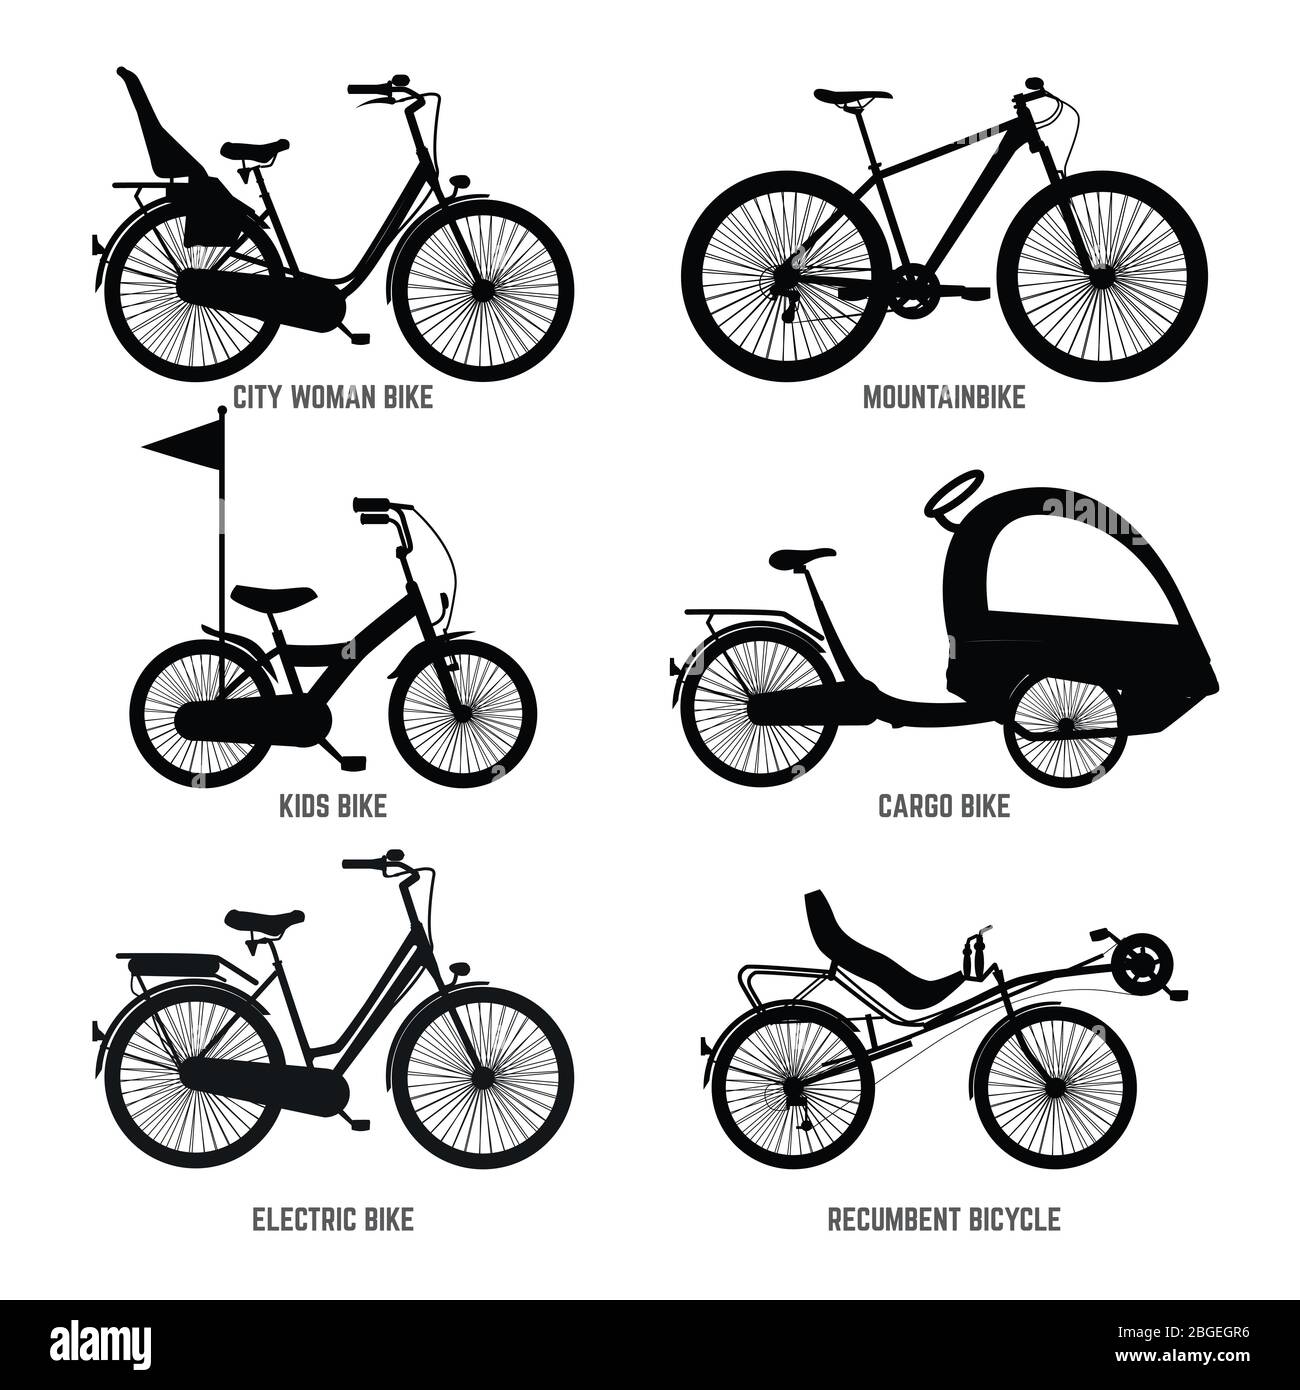 Silhouette von verschiedenen Fahrrädern für Kinder, Mann und Frau. Vektor-Schwarzweißbilder Stock Vektor